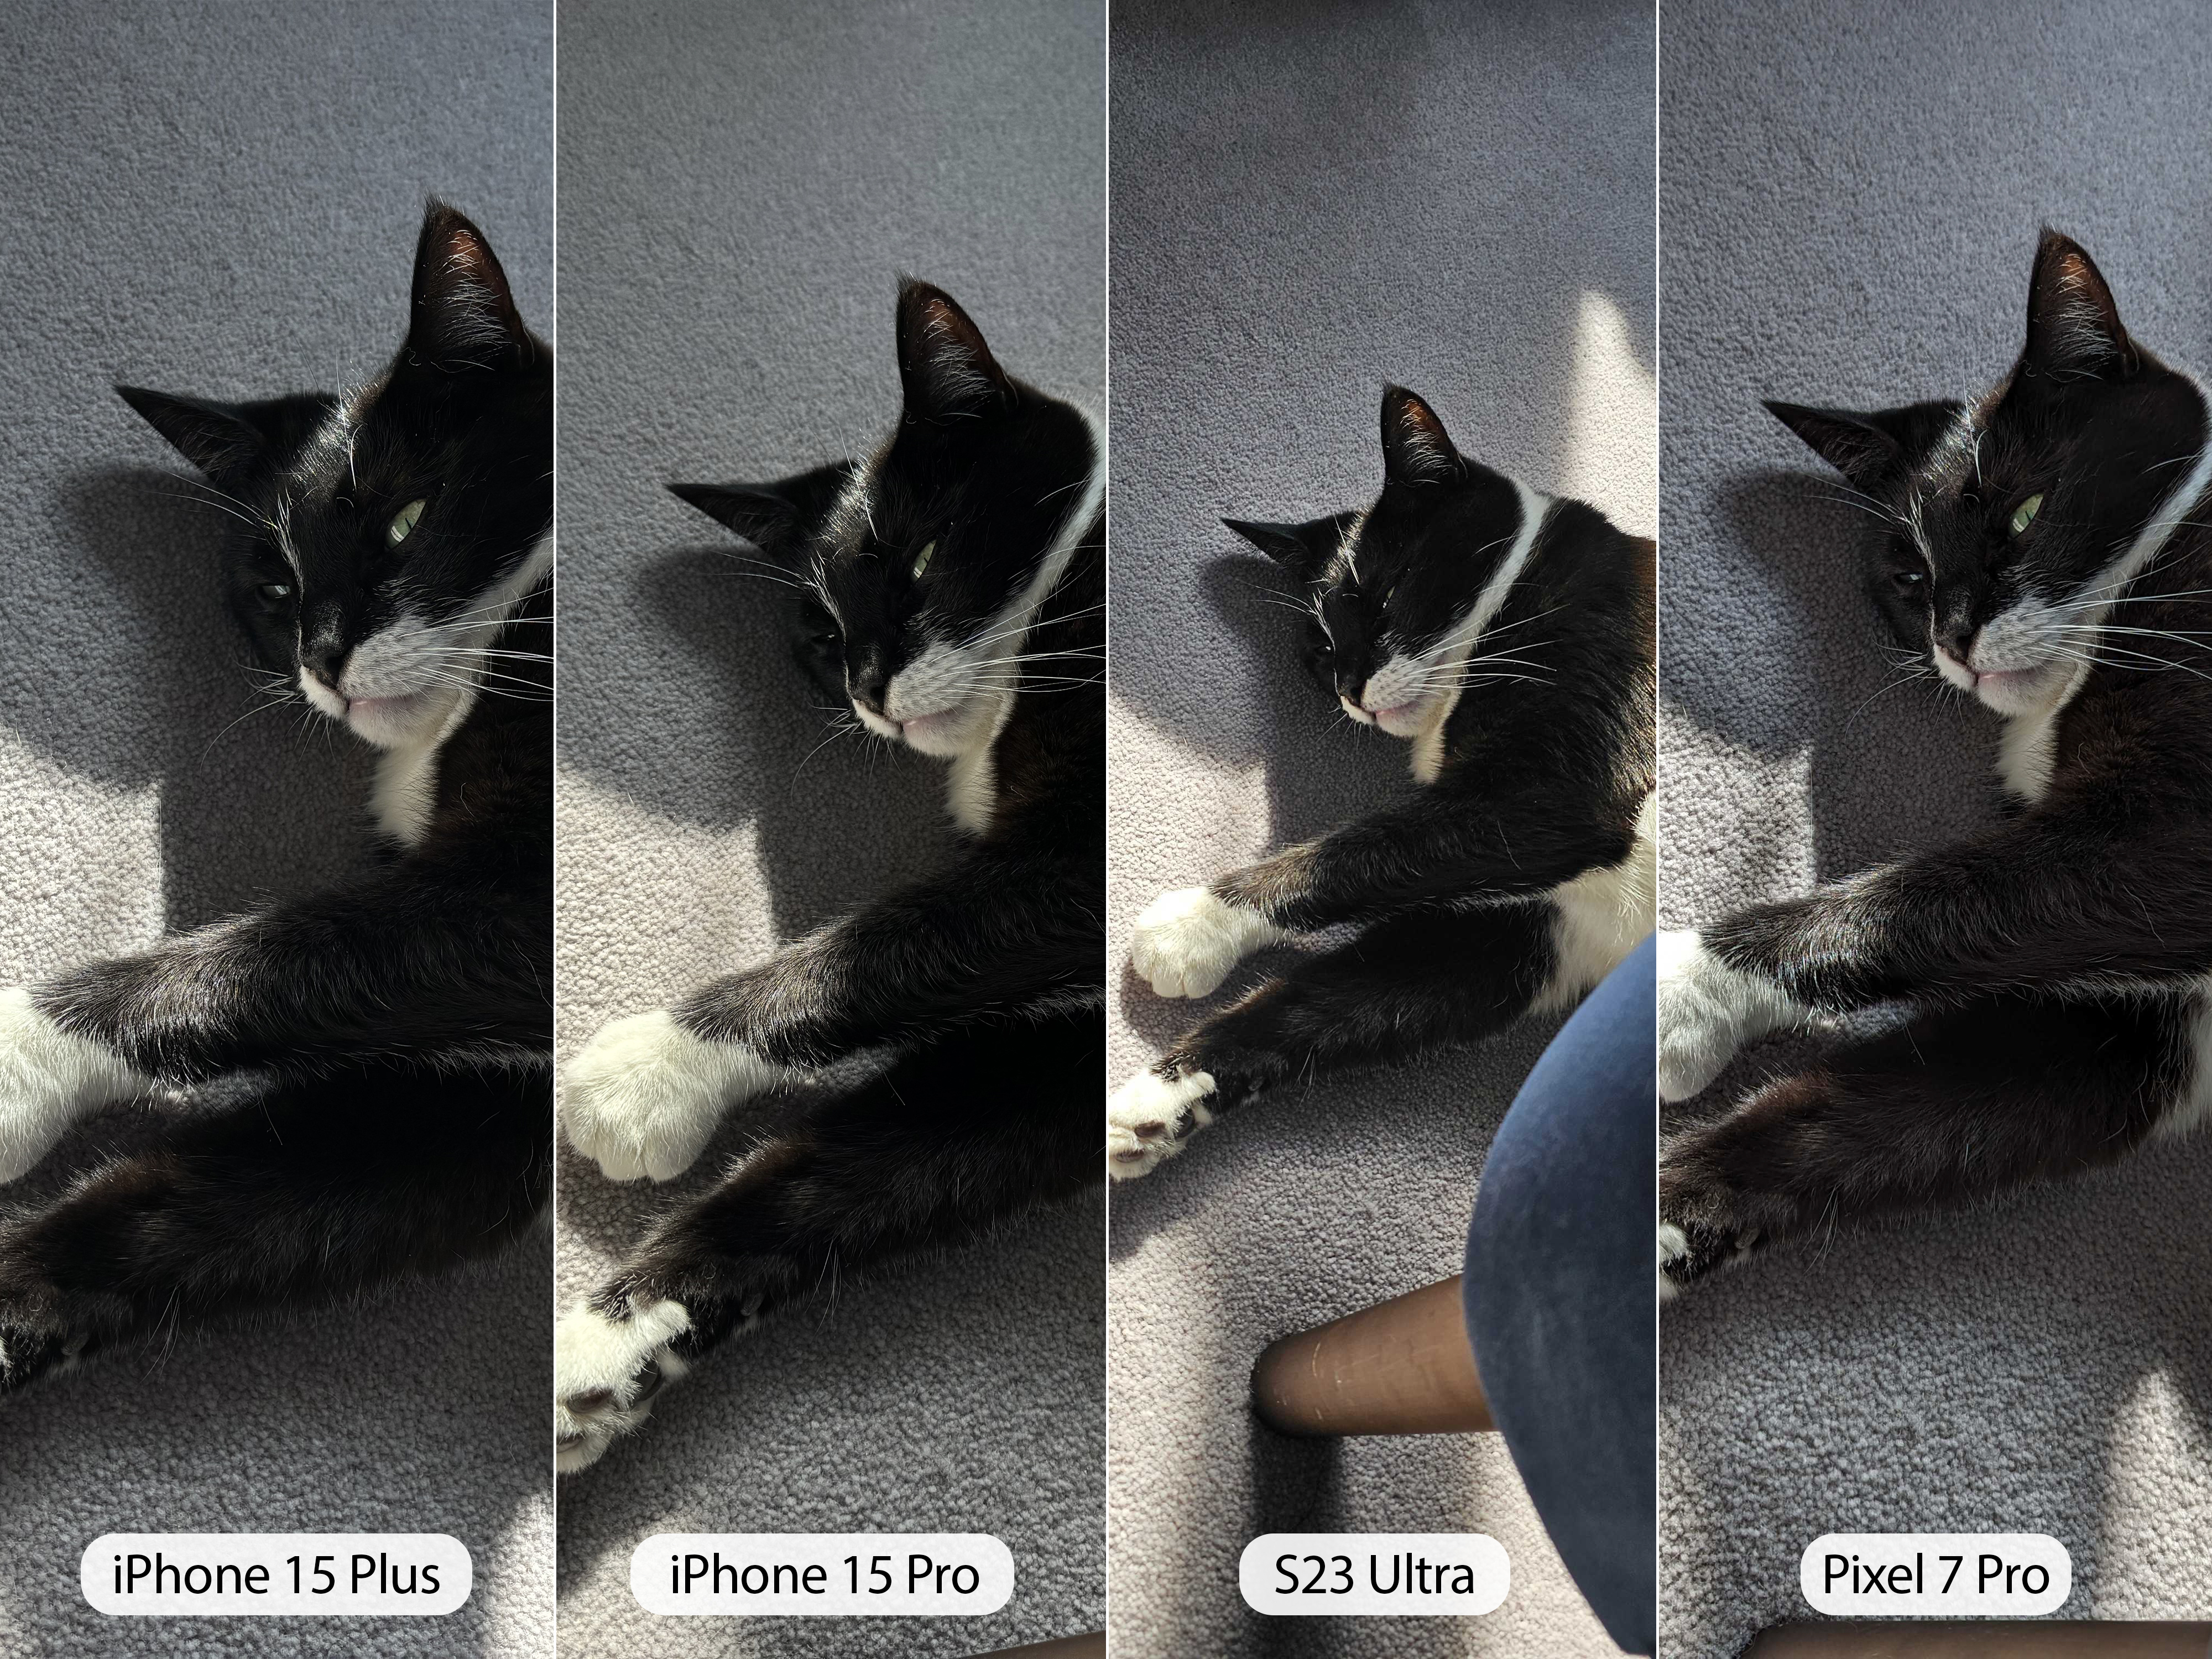 iPhone 15 Pro camera sample cat full comparison